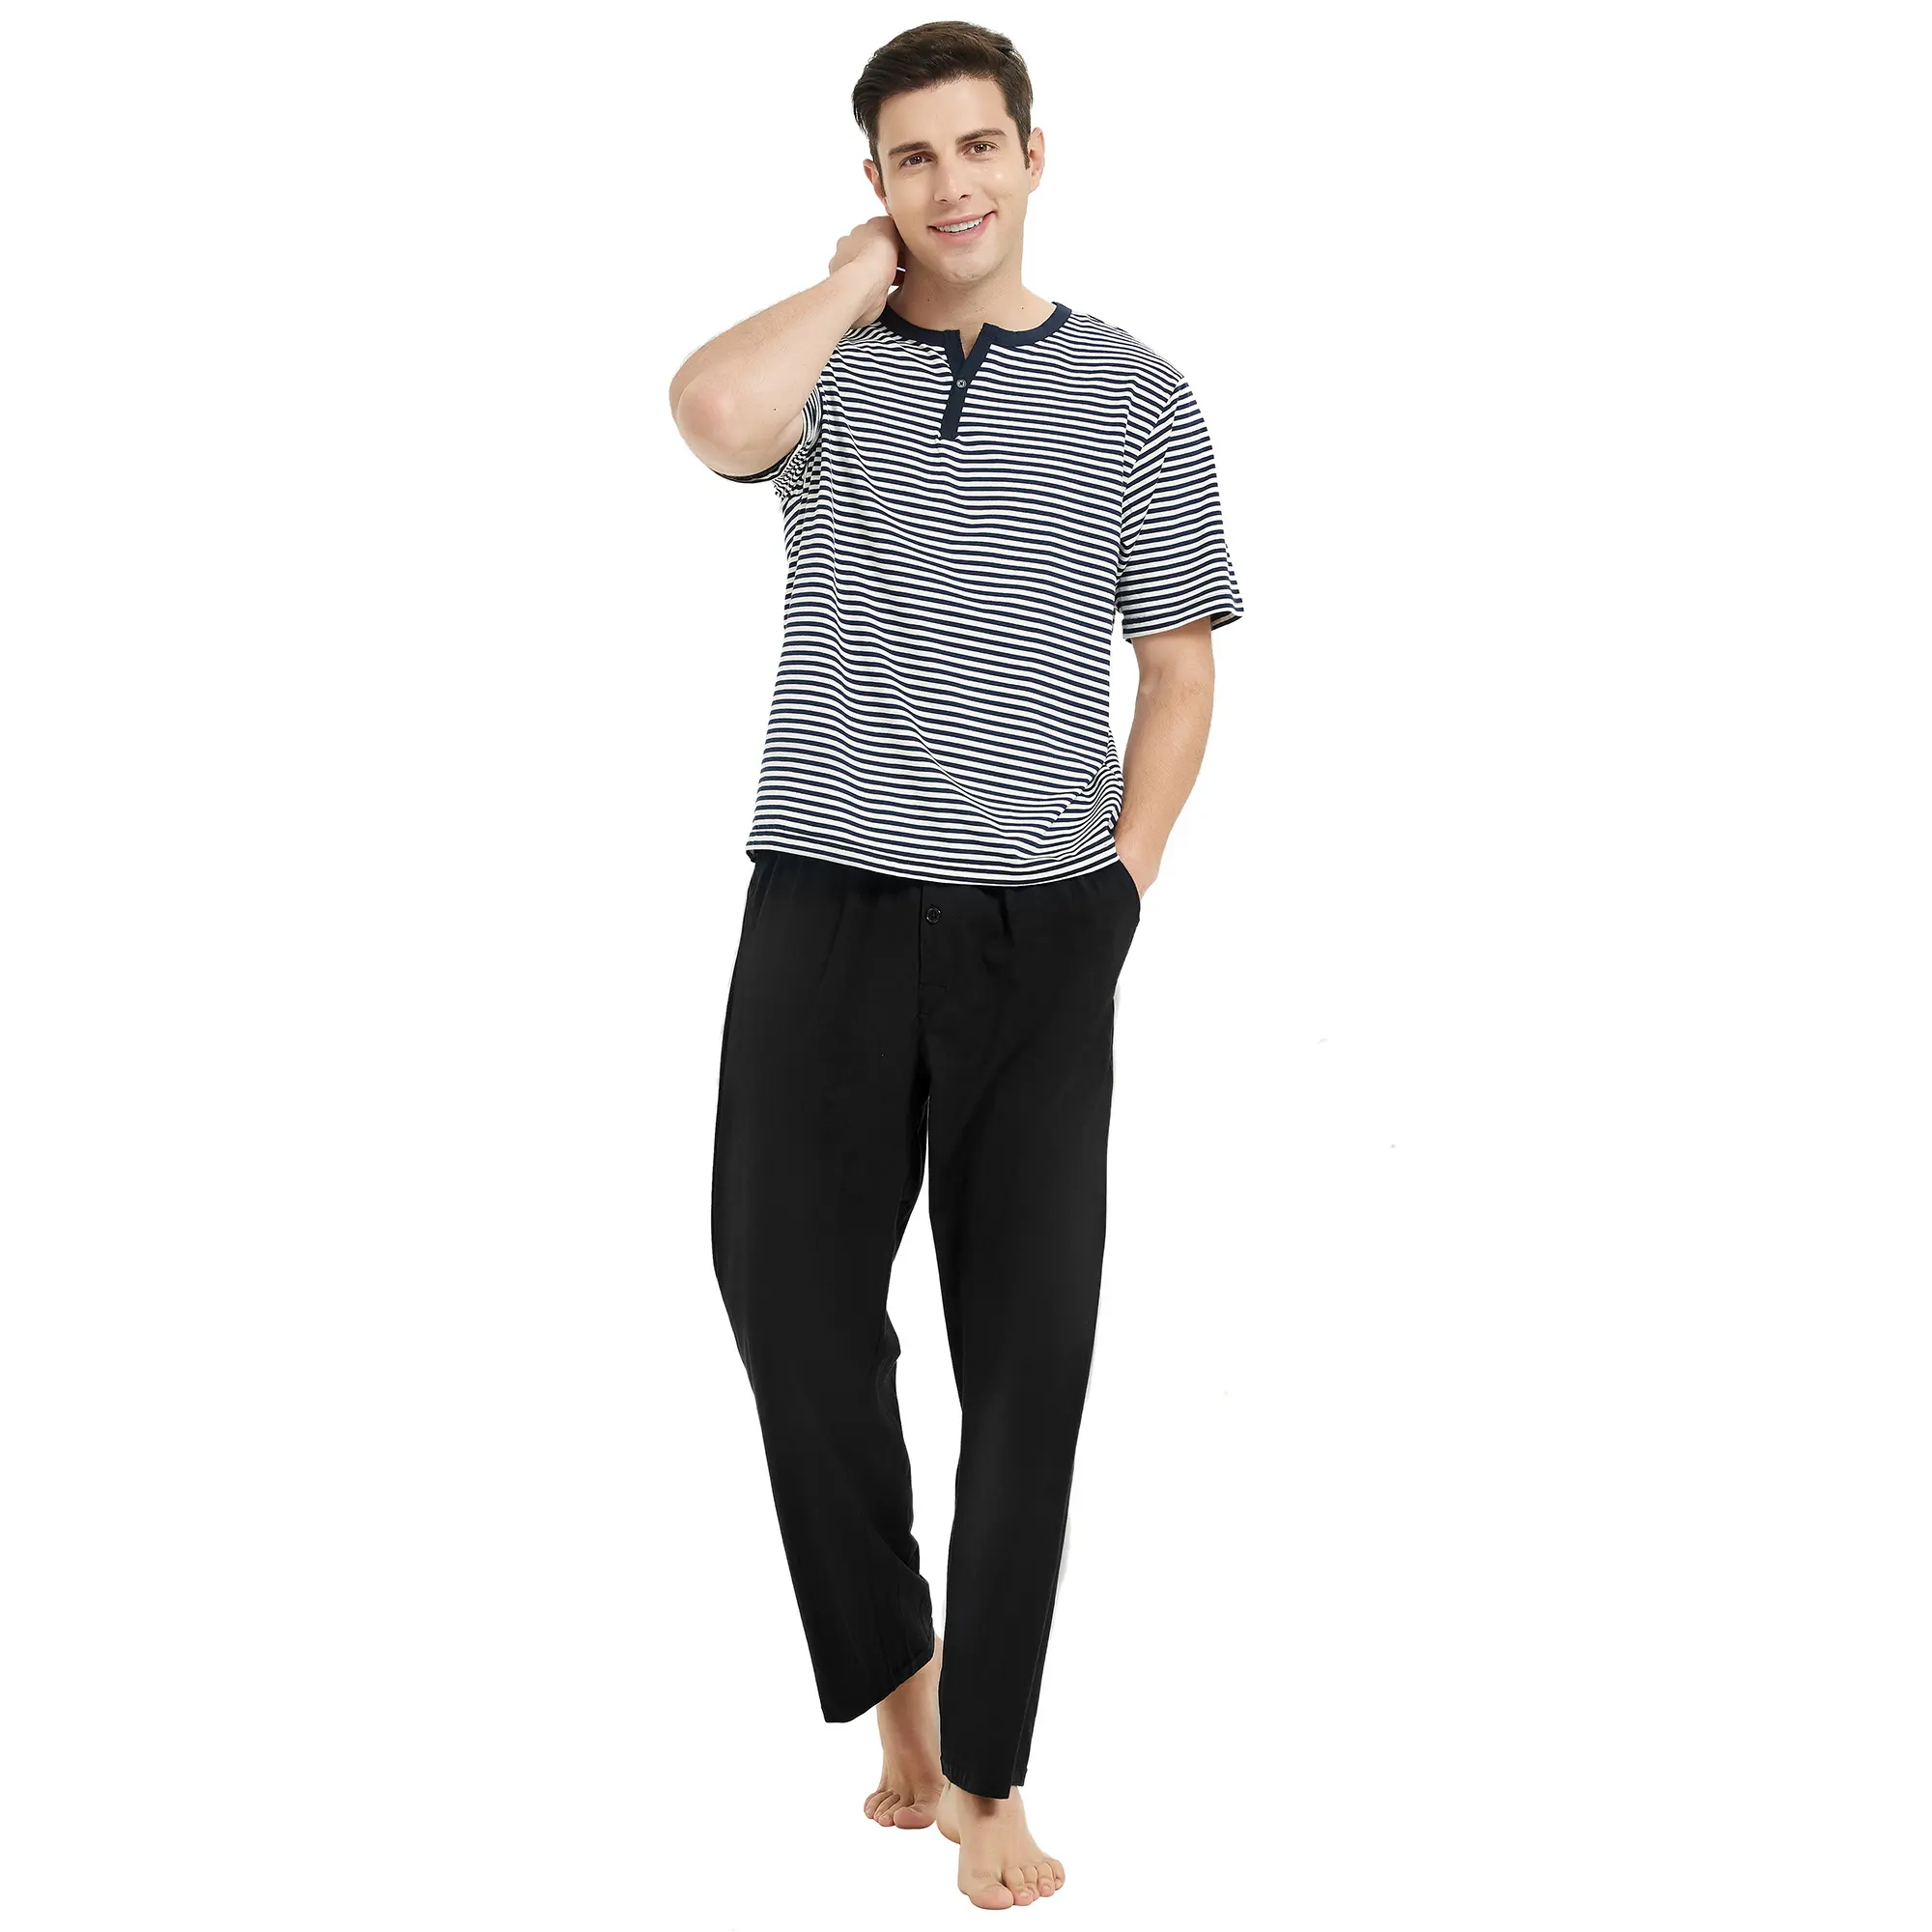 एमक्यूएफ ने पुरुषों के नरम सूती और स्पैन्डेक्स पजामा, परिवार की टी टॉप शर्ट, धारीदार और सॉलिड पैंट मैन क्रिसमस पायजामा सेट के साथ रखा है